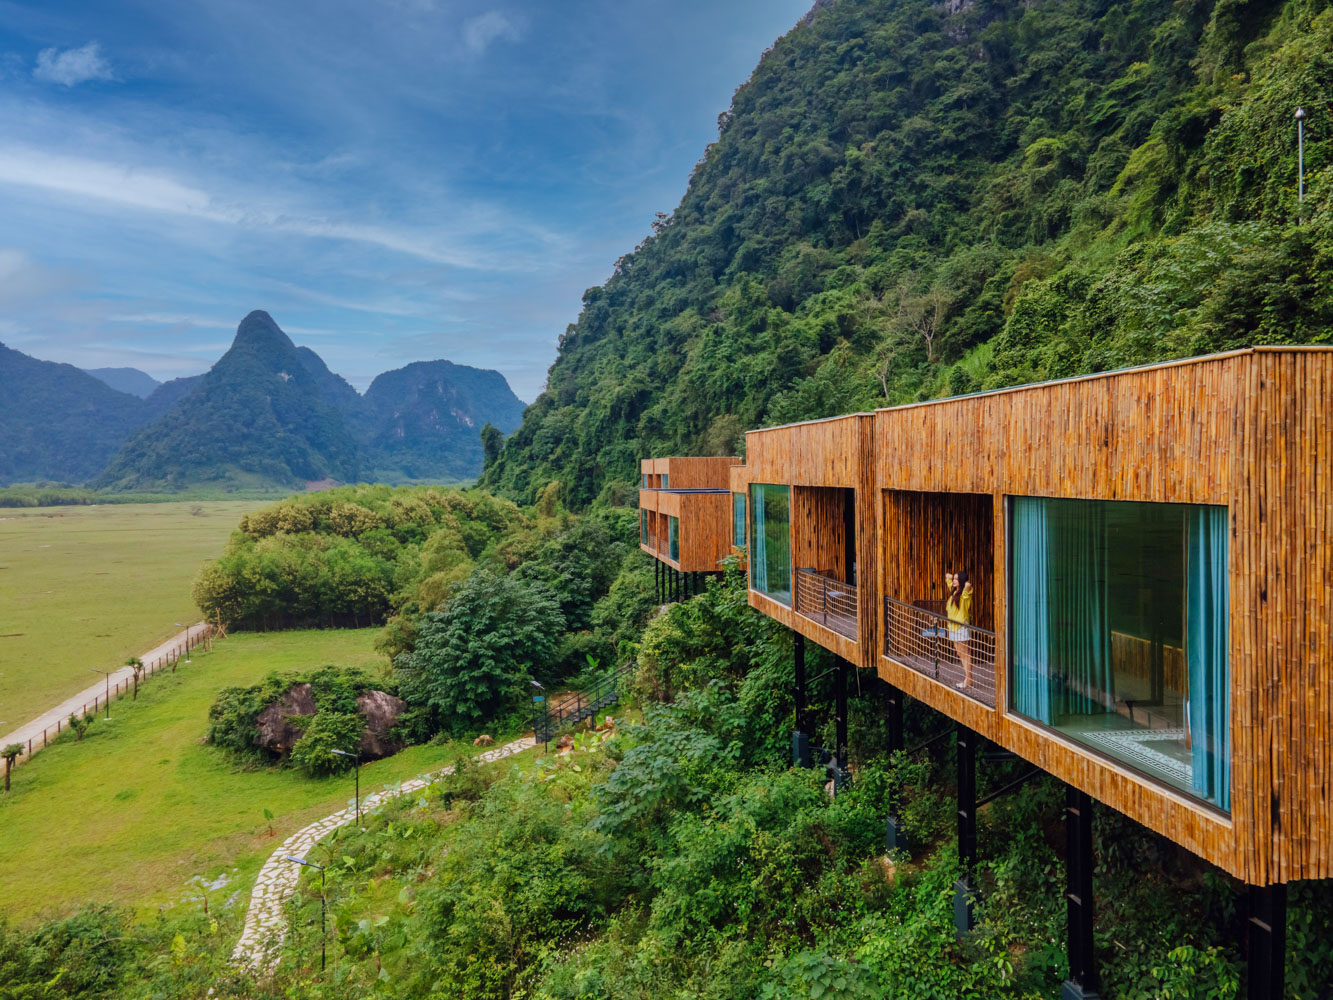 Khu nghỉ dưỡng Tú Làn Lodge được xây dựng bên sườn núi.